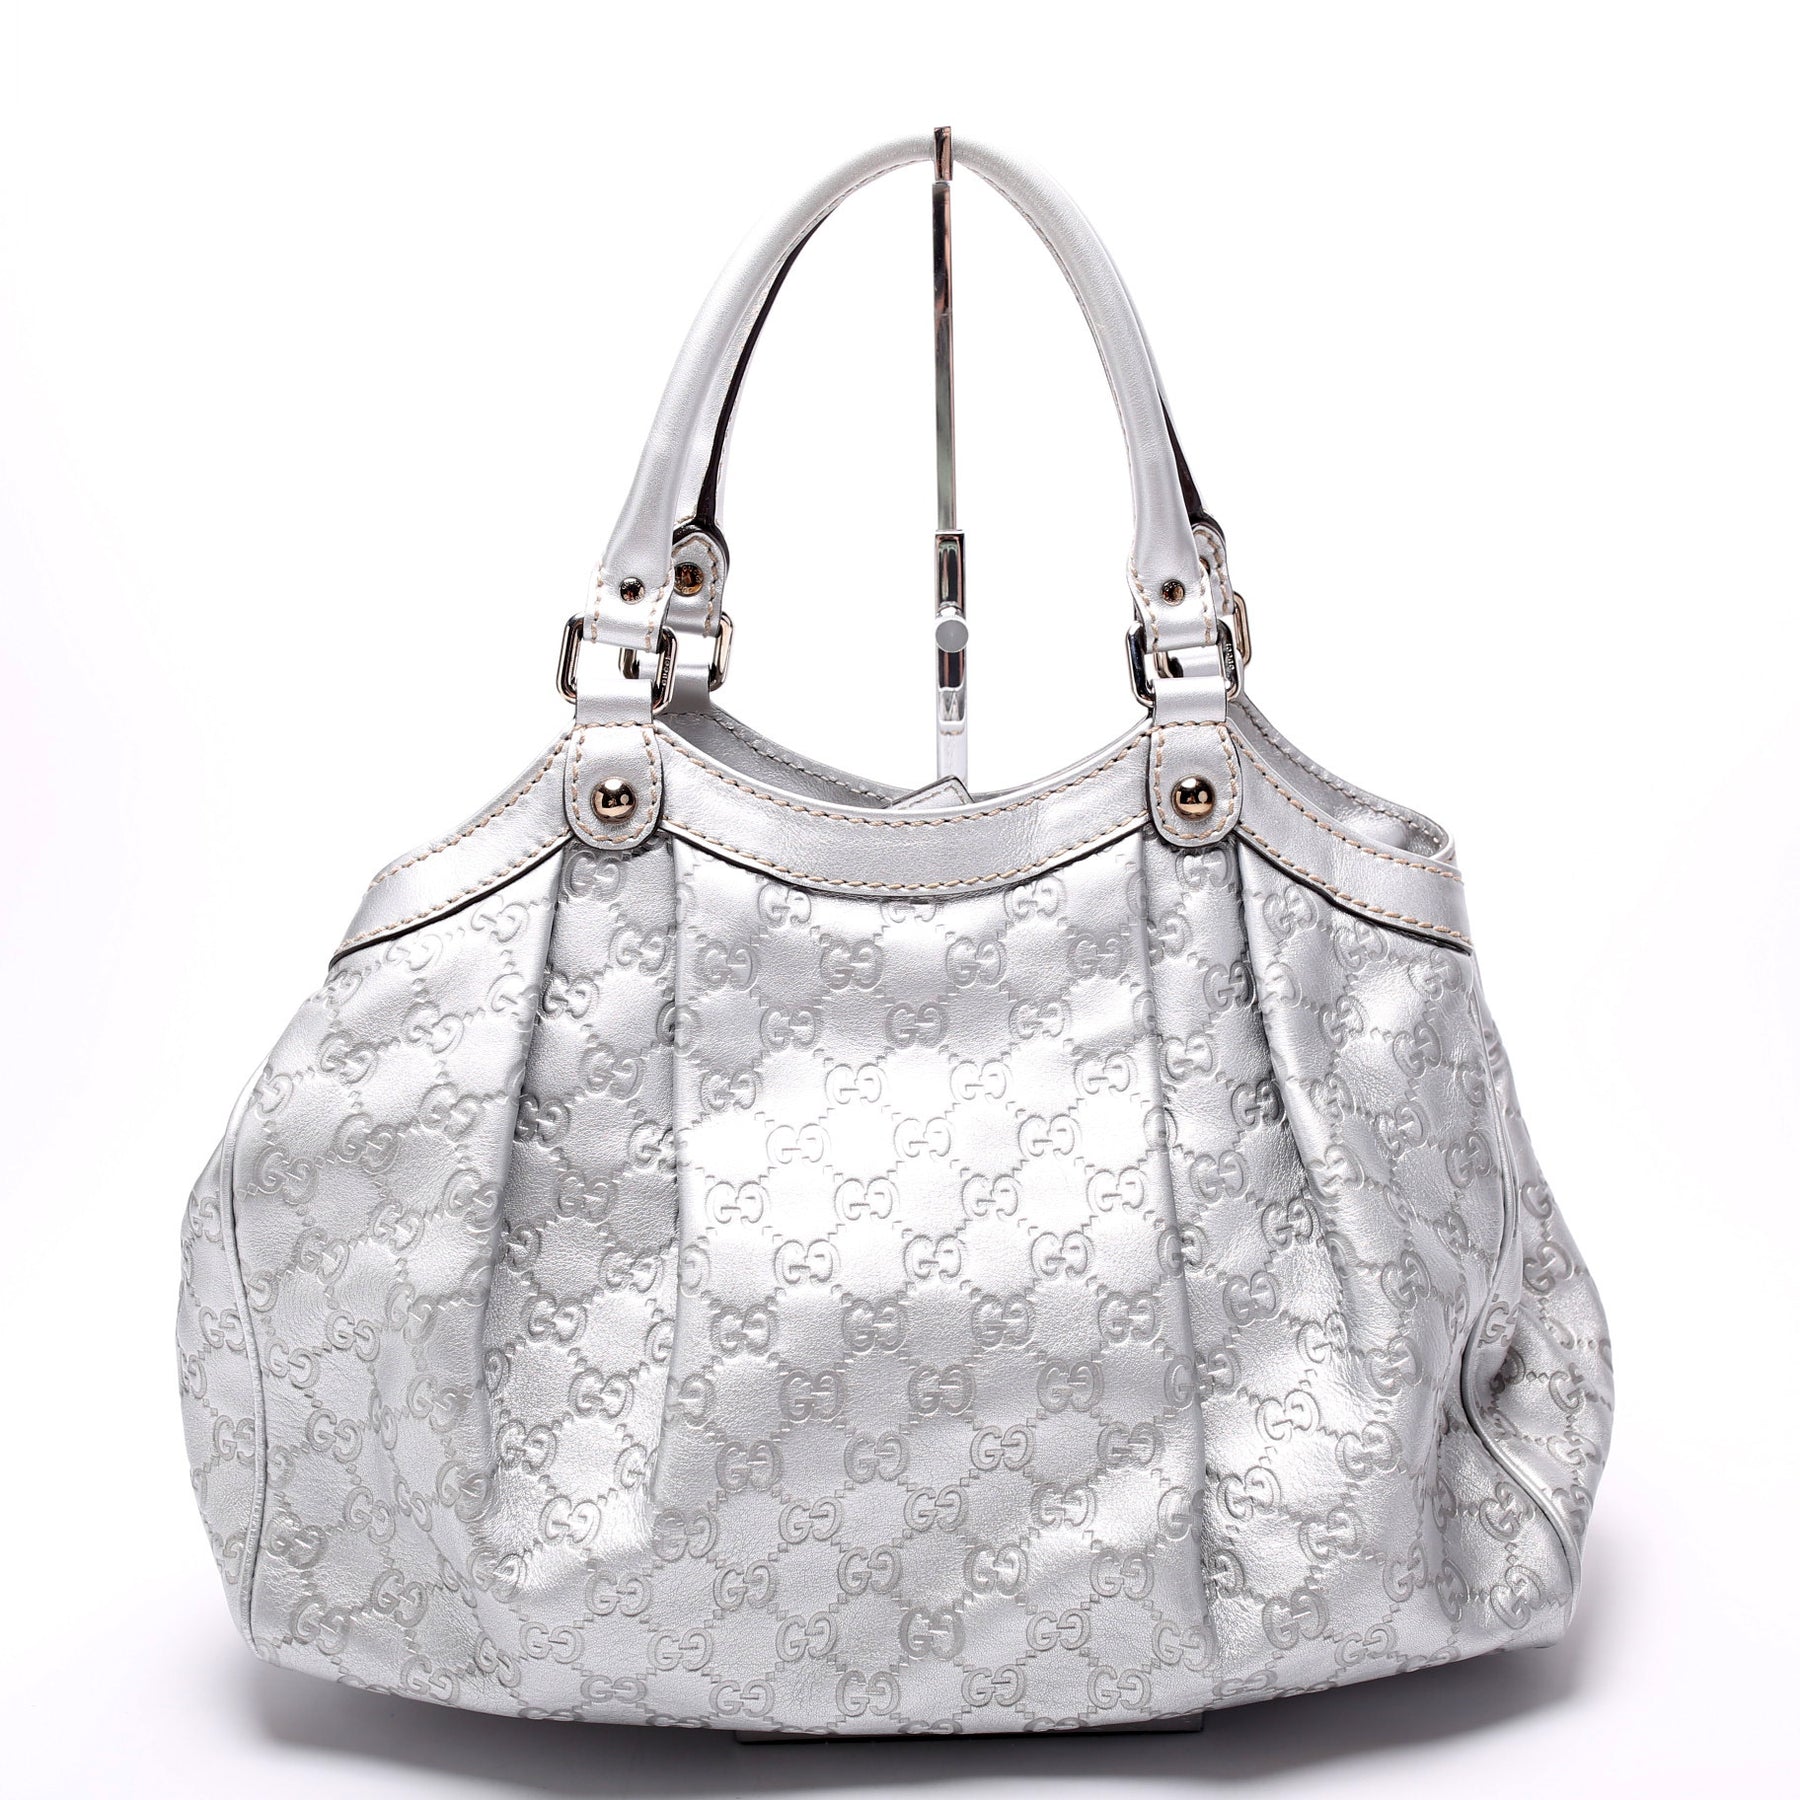 Gucci White Guccissima Leather Medium Sukey Tote Bag